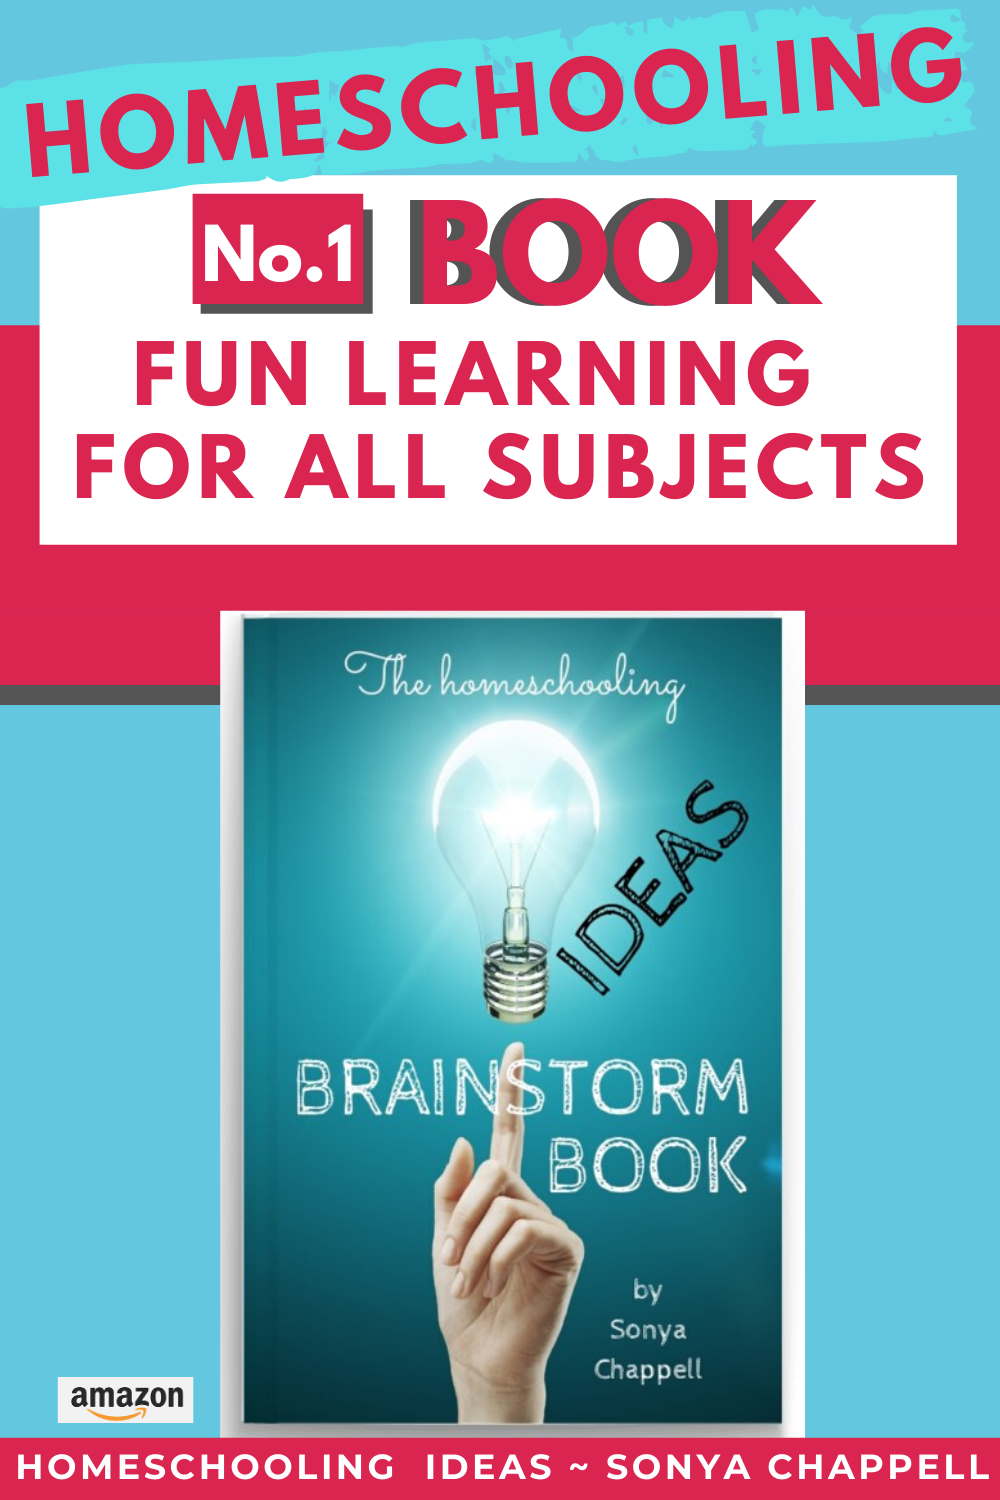 homeschooling ideas Brainstorm book 124KB Pinterest